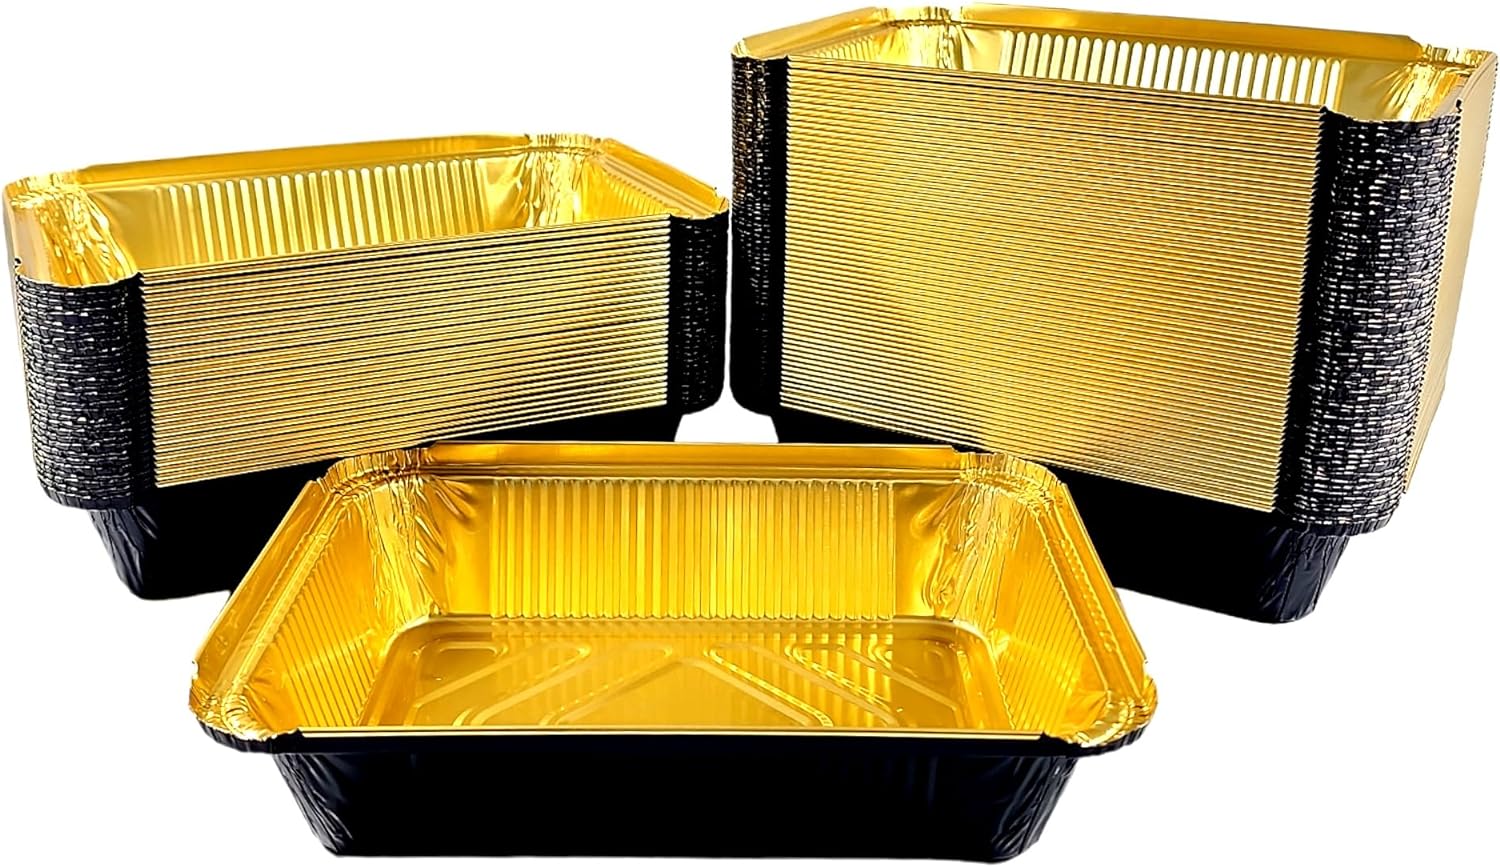 2 1/4 lb. Oblong Black & Gold Aluminum Foil Pans Take Out Heavy Duty Containers 500/CS